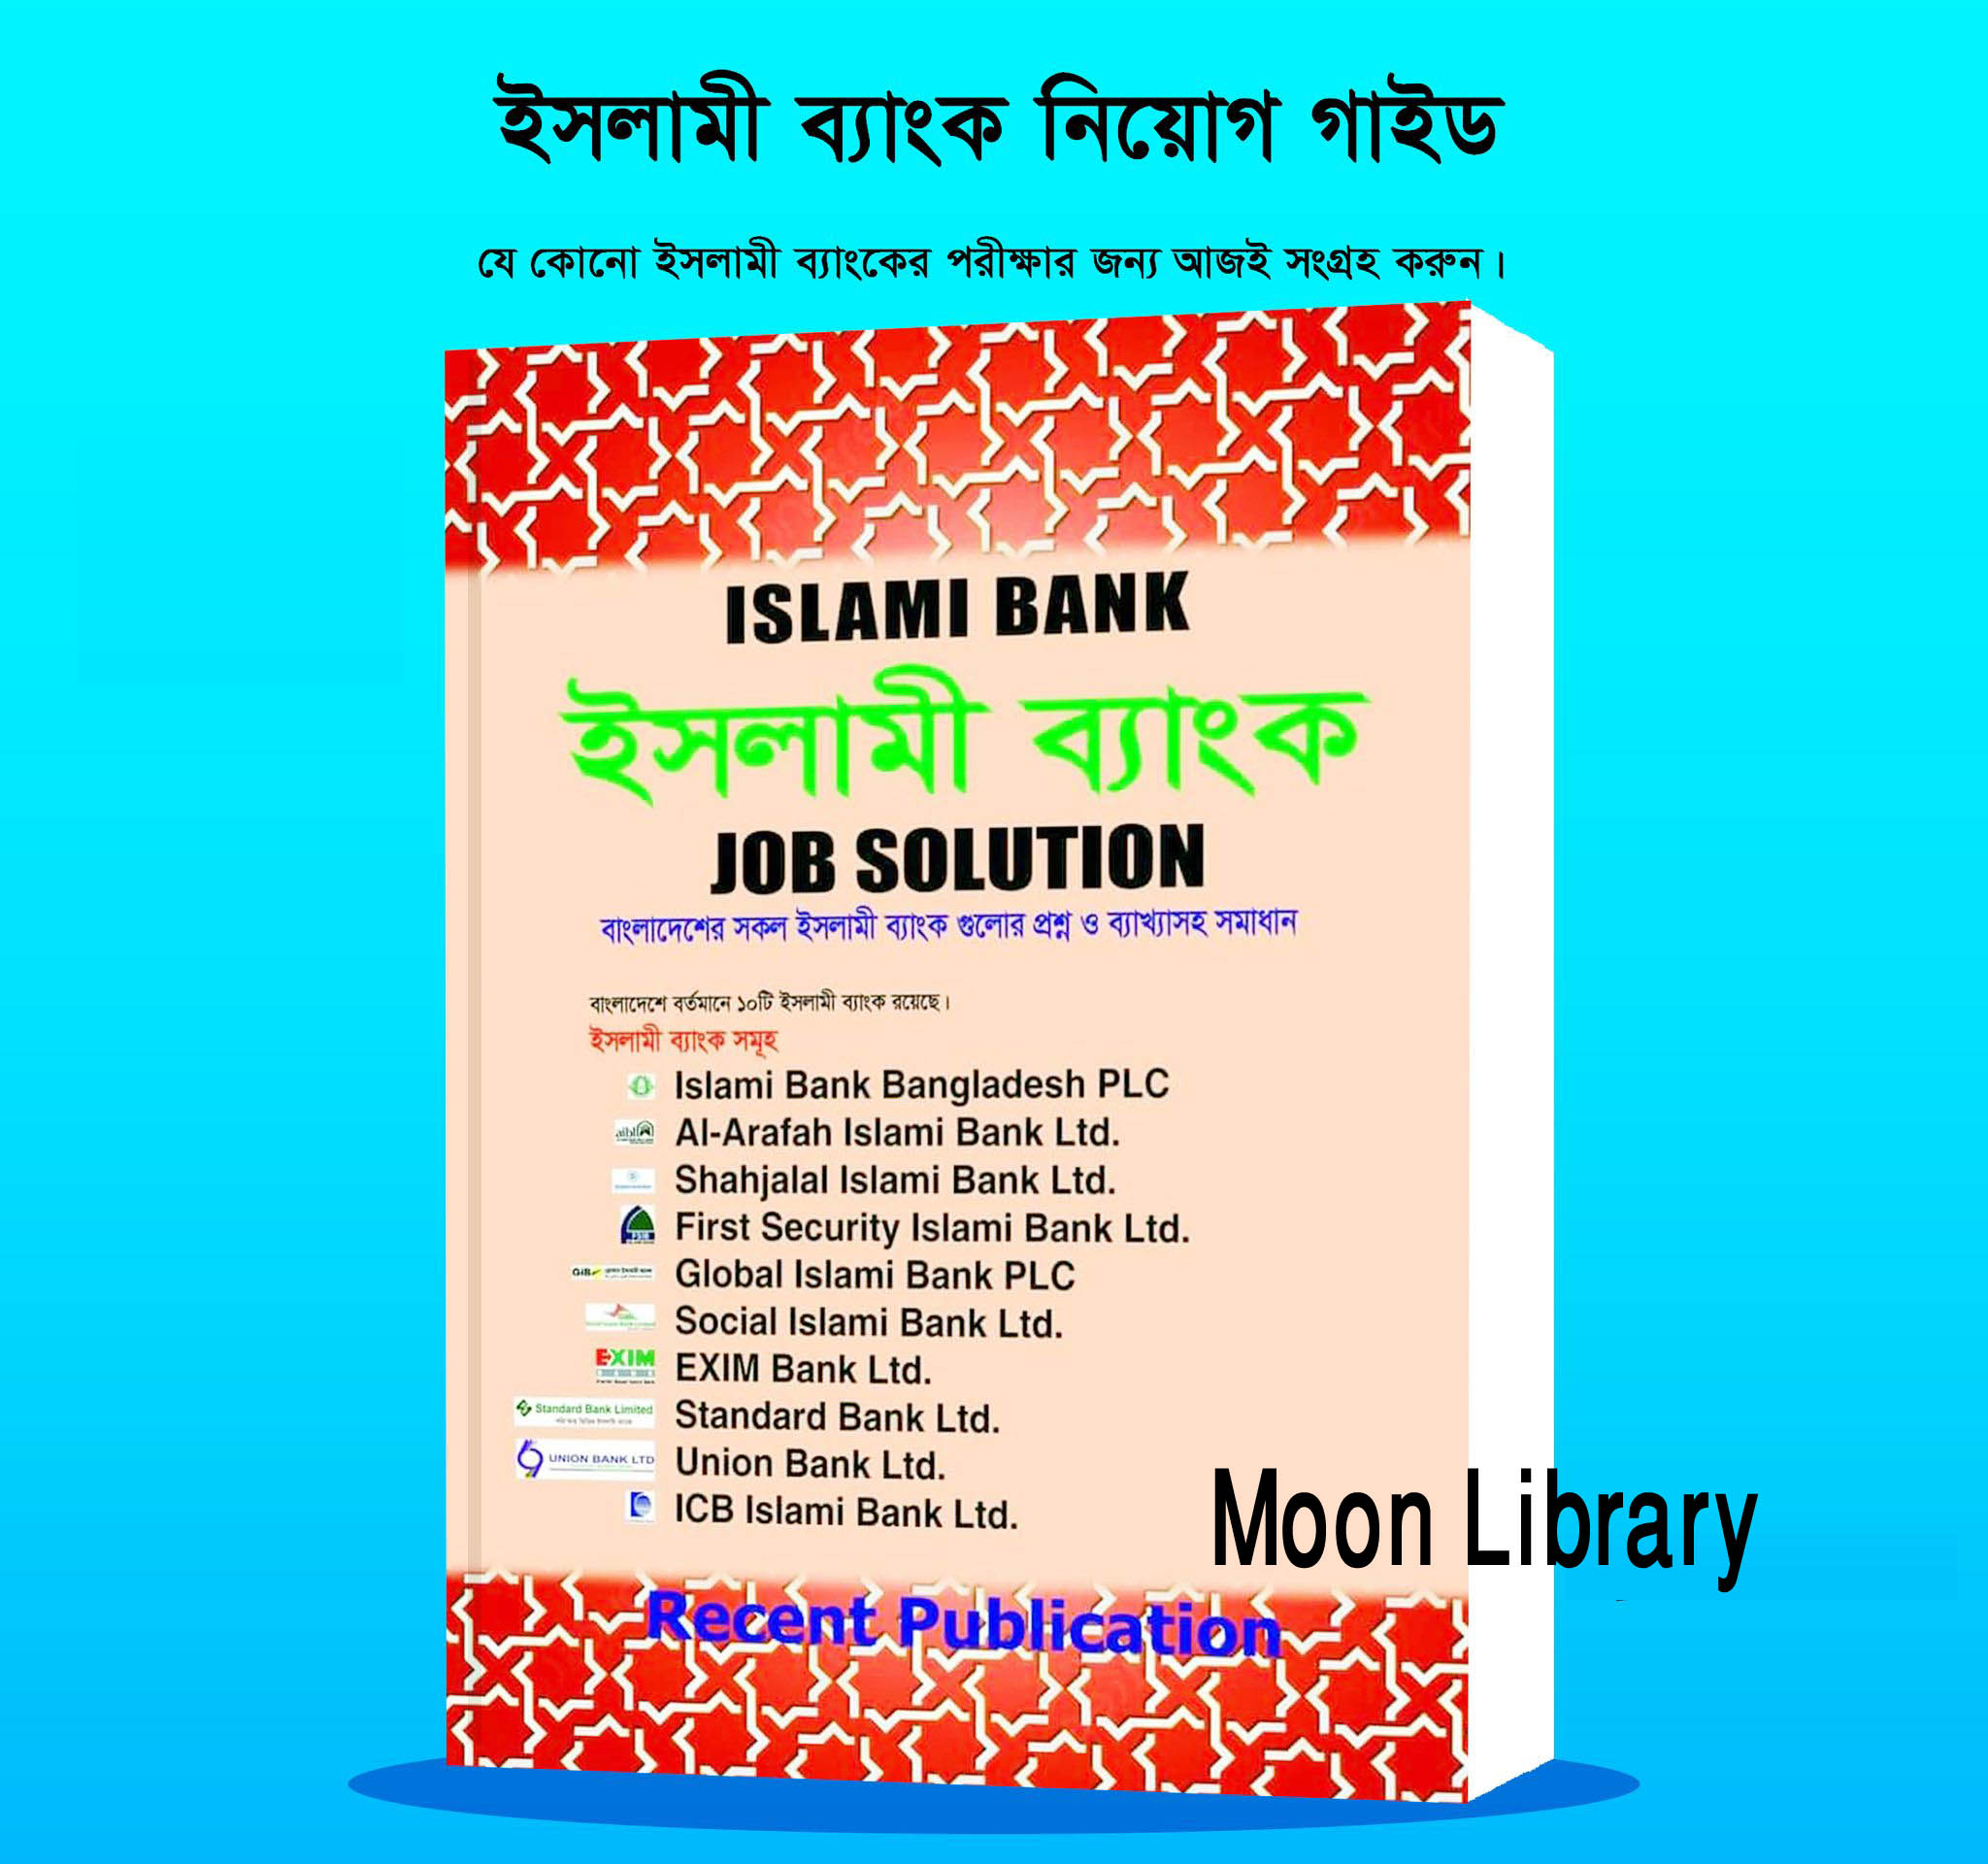 Islami Bank job Solution (Recent Publication)